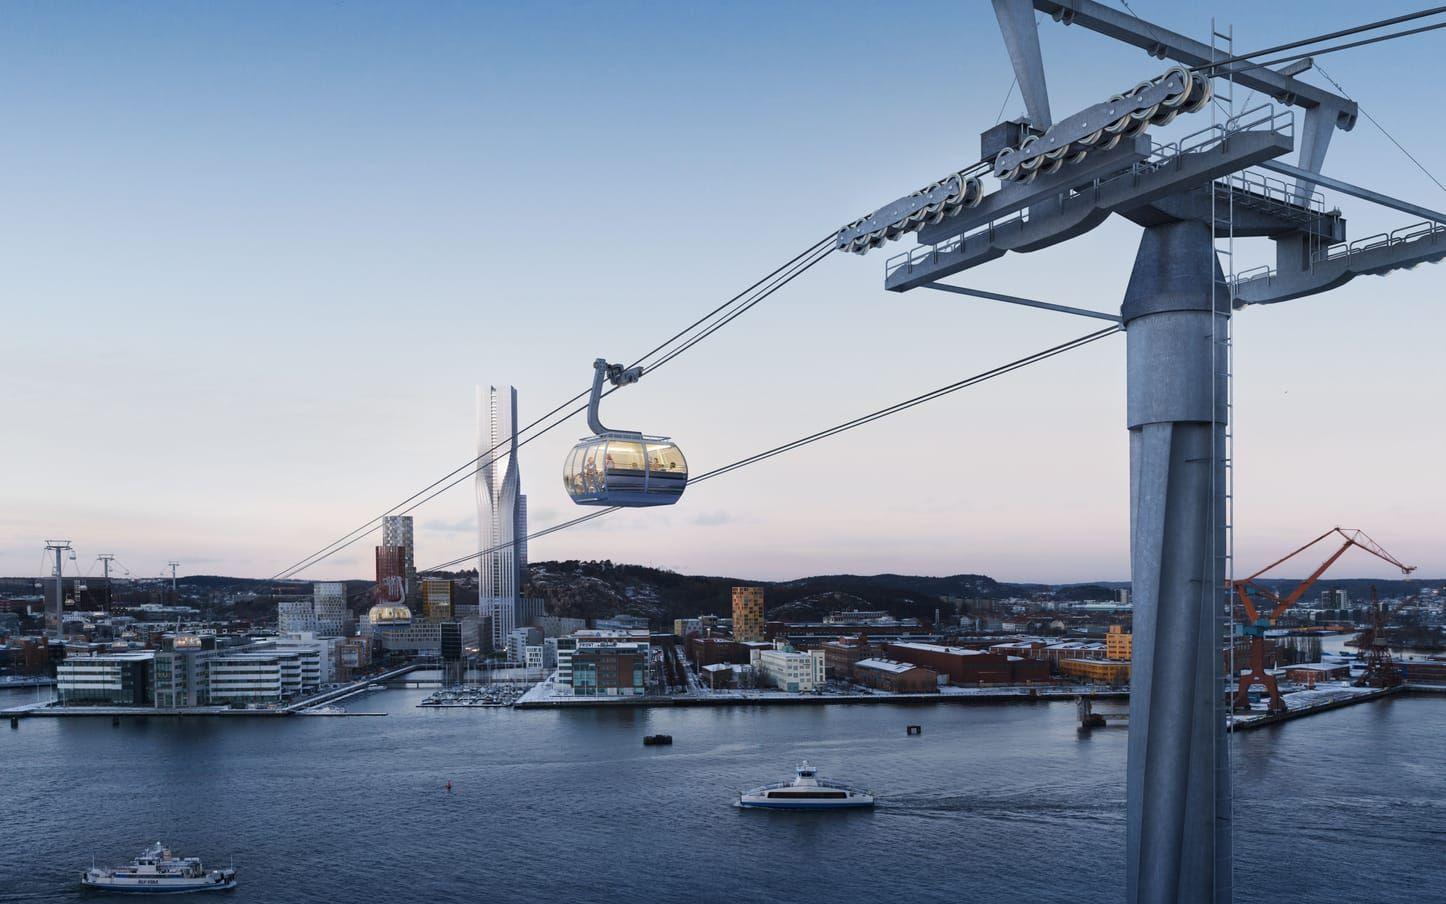 Till Göteborg 400-årsjubileum 2021 planeras det för en linbana mellan Järntorget och Wieselgrensplatsen. Nu stöttas projektet med 2,8 miljoner euro av EU. 